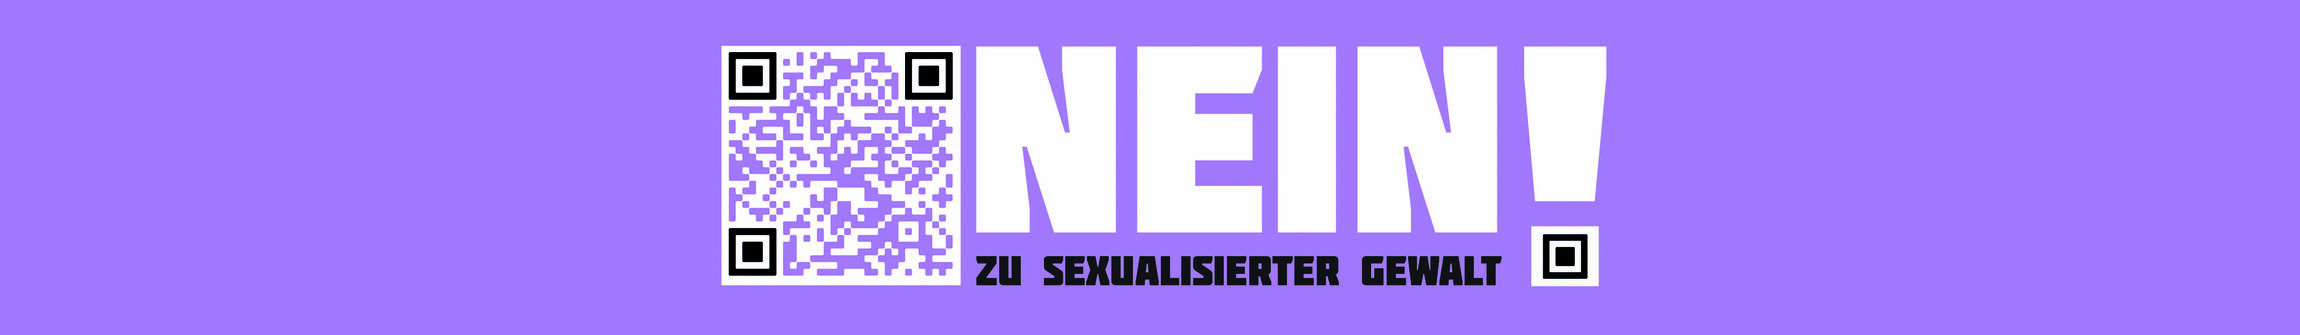 Nein zu sexualisierter Gewalt